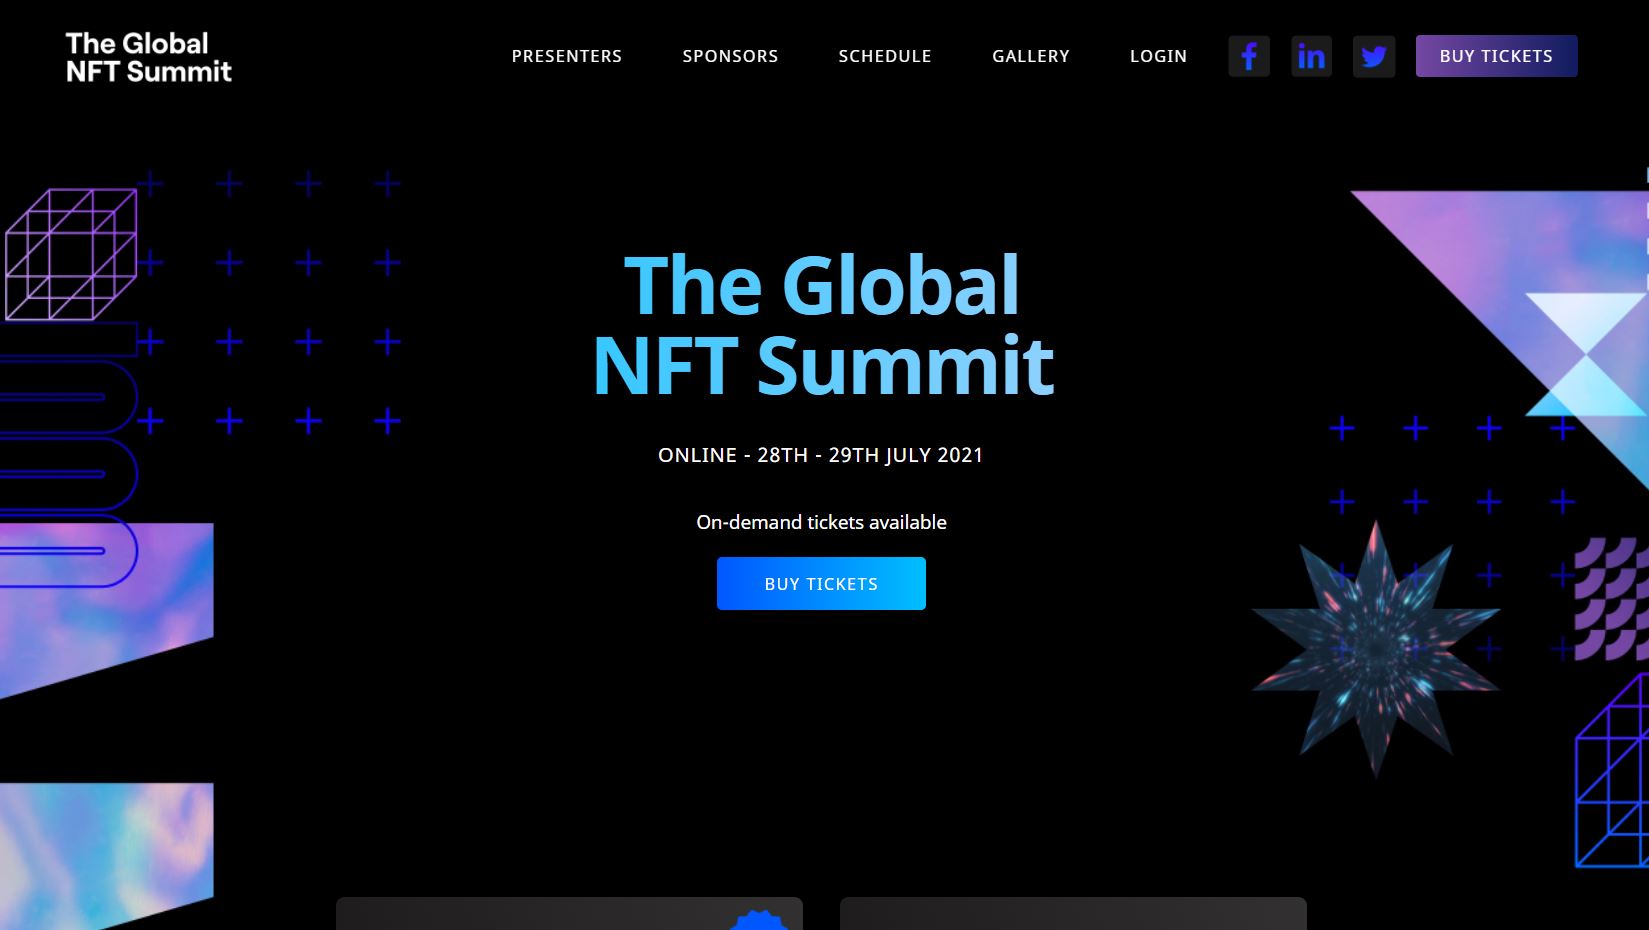 The Global NFT Summit 2021